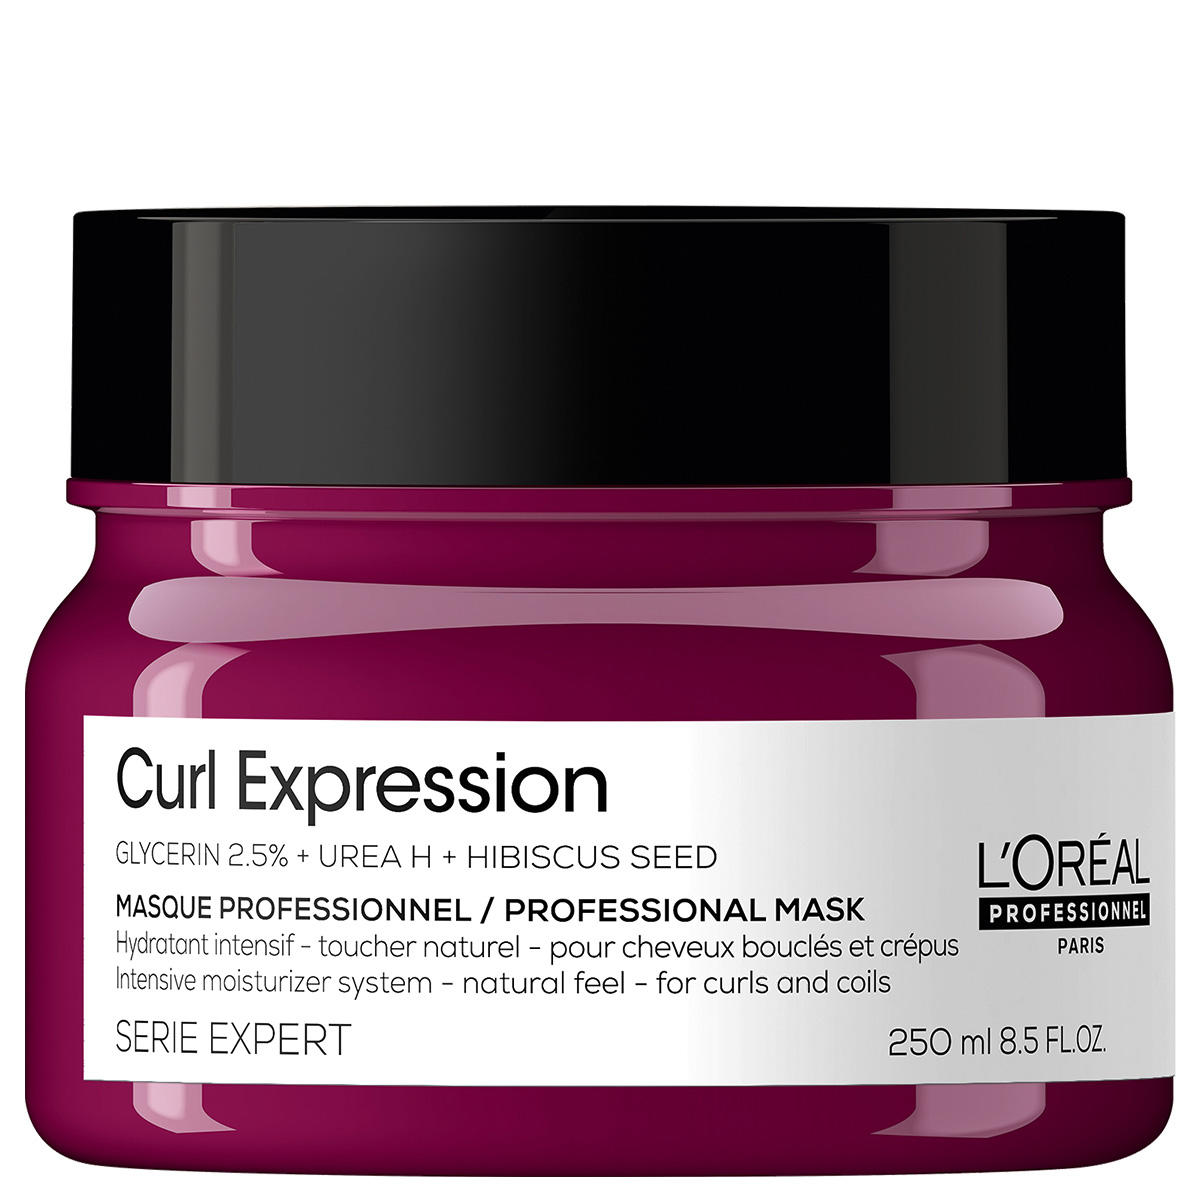 L'Oréal Professionnel Paris Serie Expert Curl Expresssion Intensive Moisturizer Mask 250 ml - 1